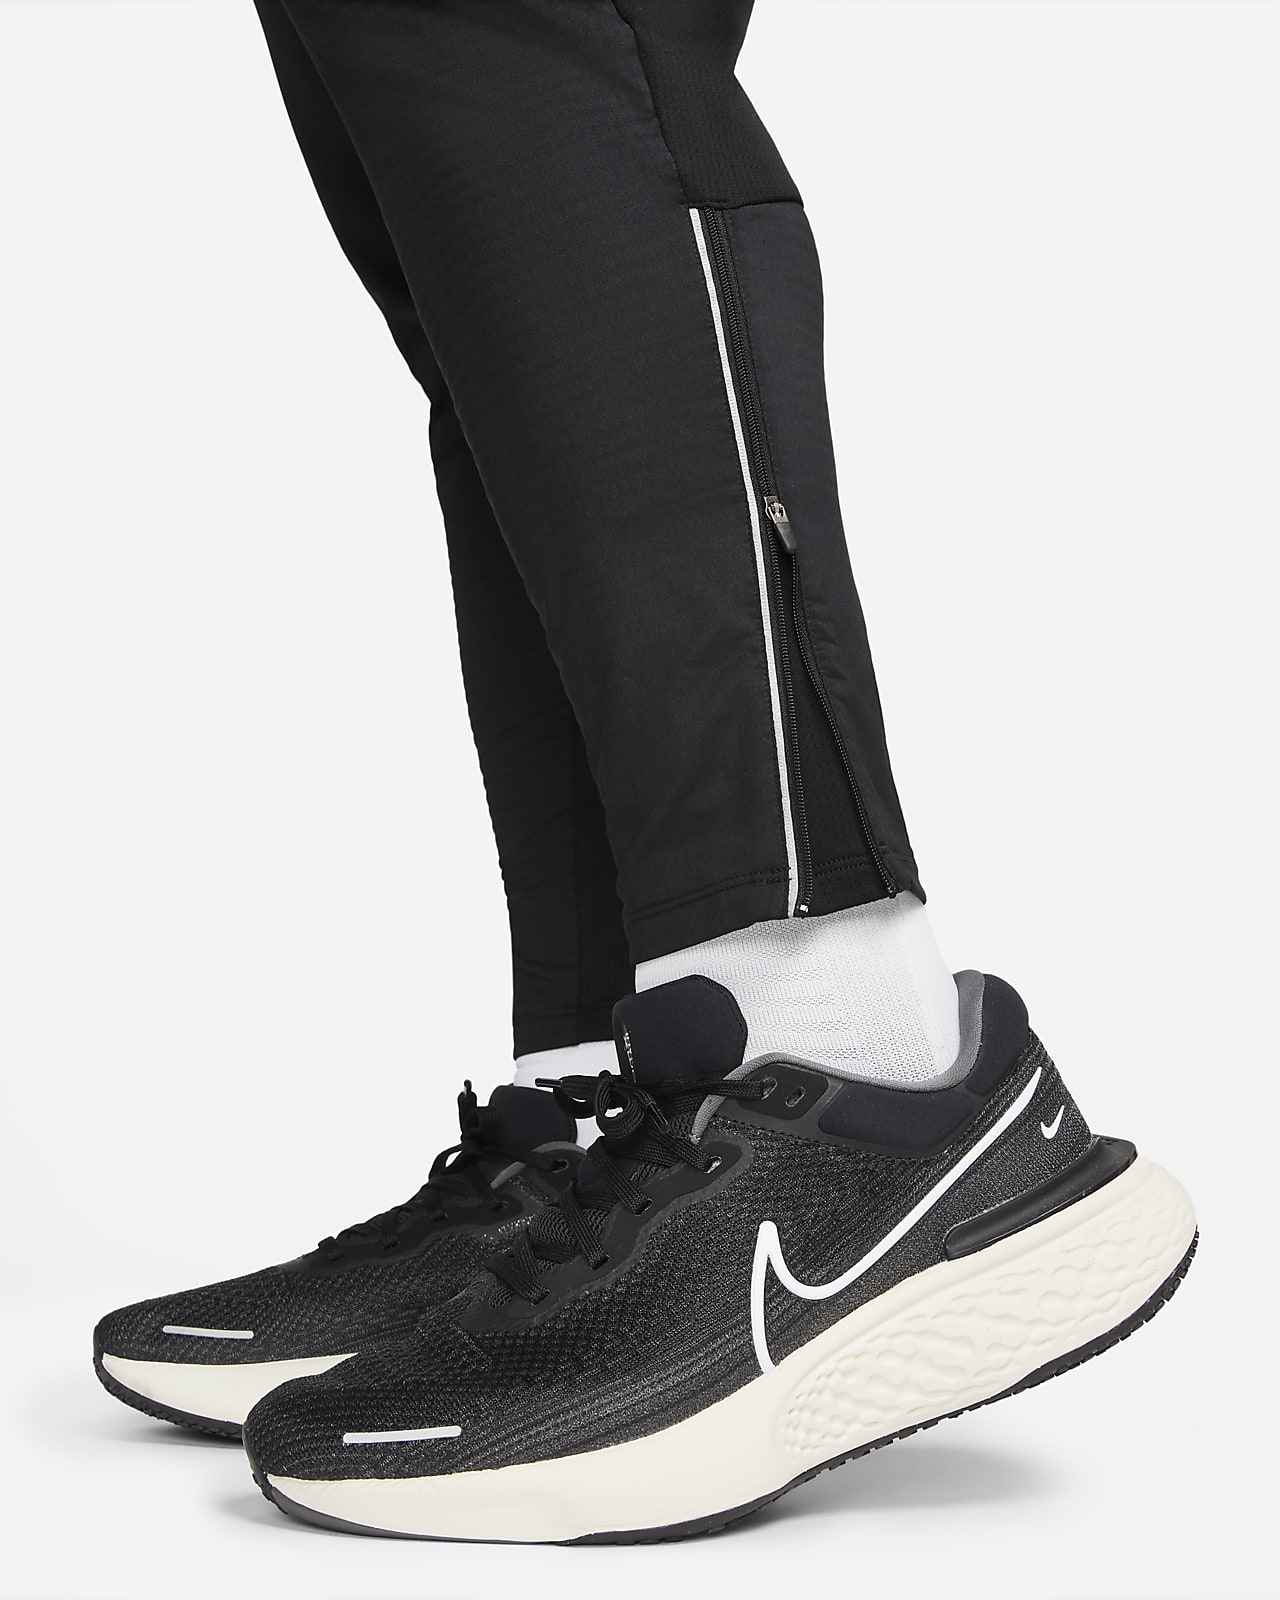  Nike Men's Phenom Elite Knit Running Pants, Grey (as1